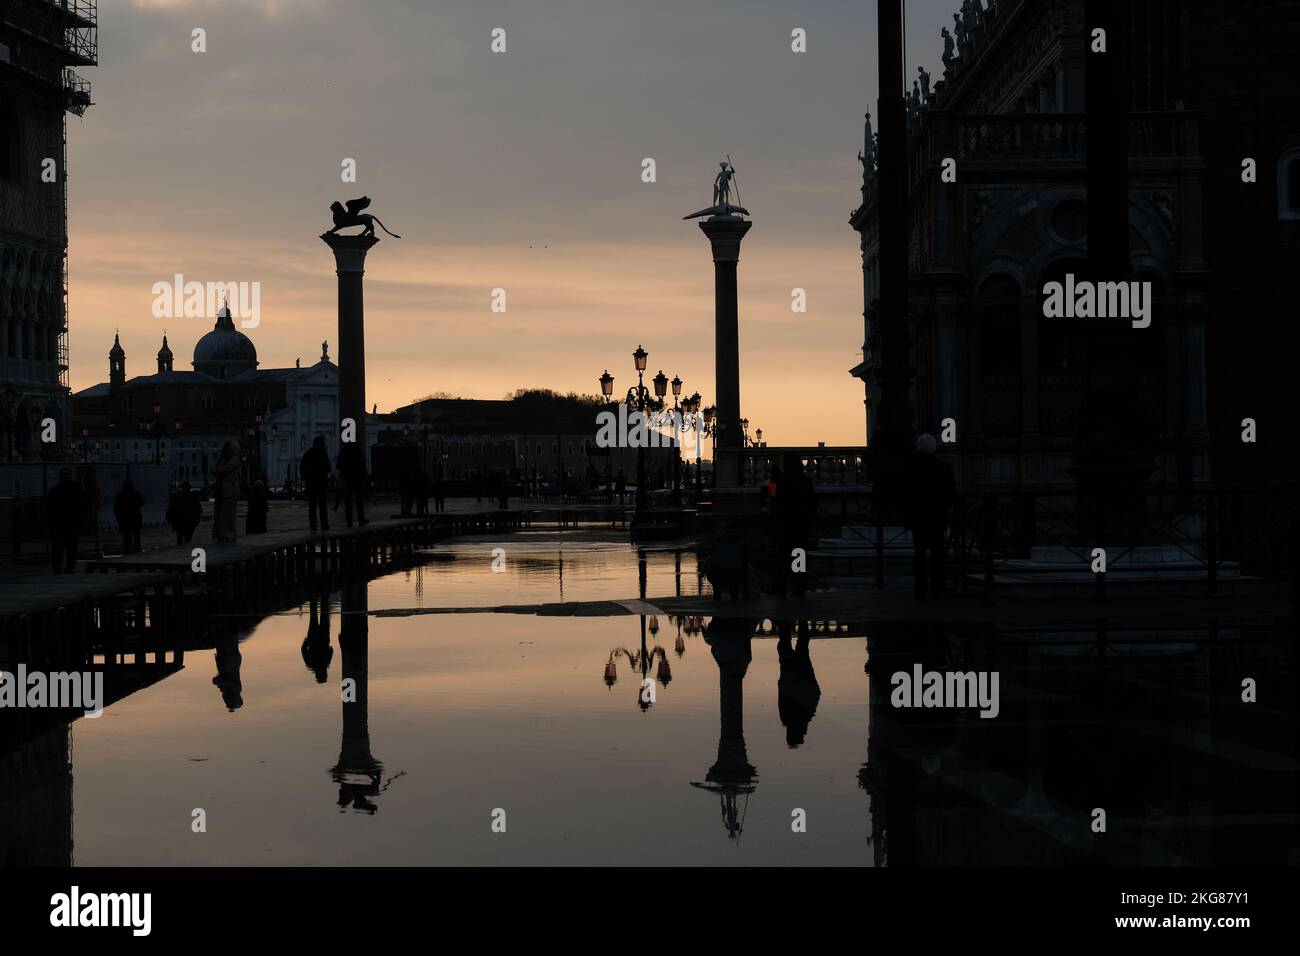 High water in St' Mark's square in Venice Italy, November 22, 2022. Stock Photo